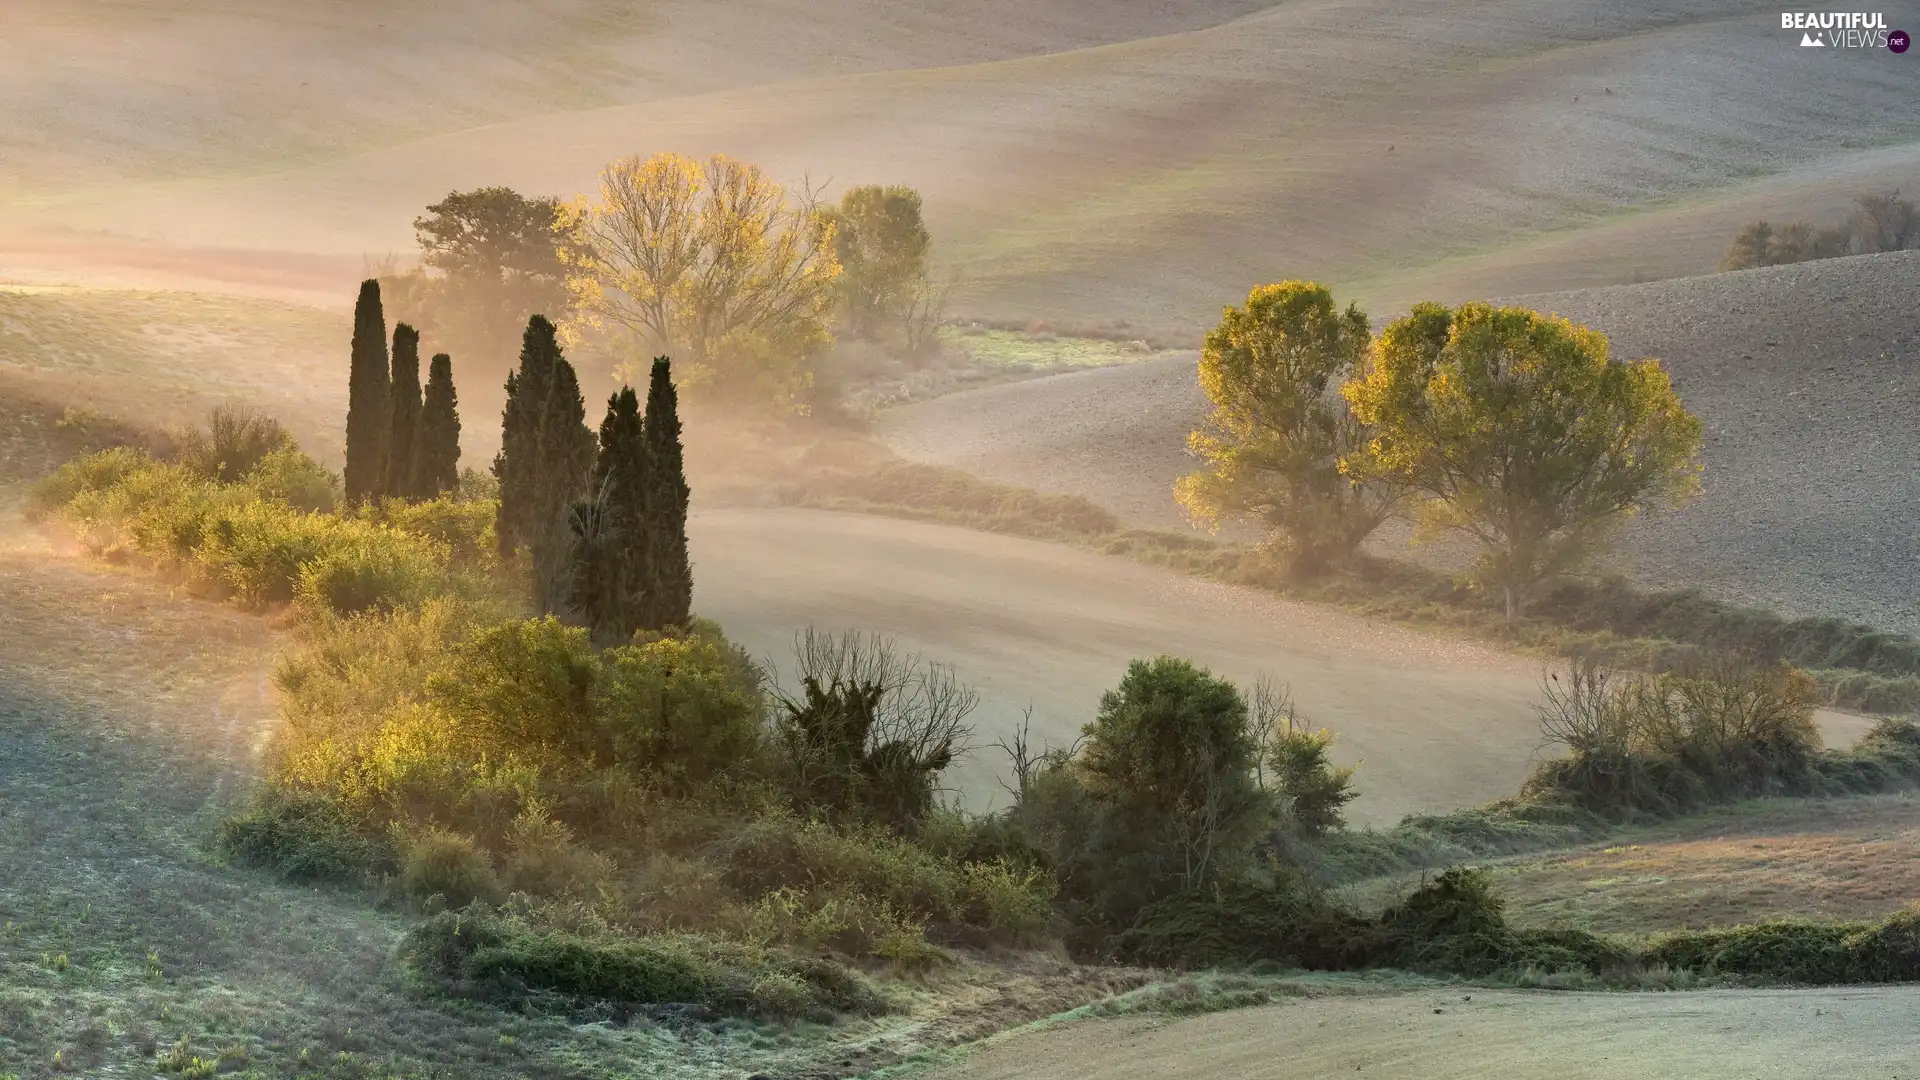 Fog, Tuscany, viewes, field, Italy, trees, Bush